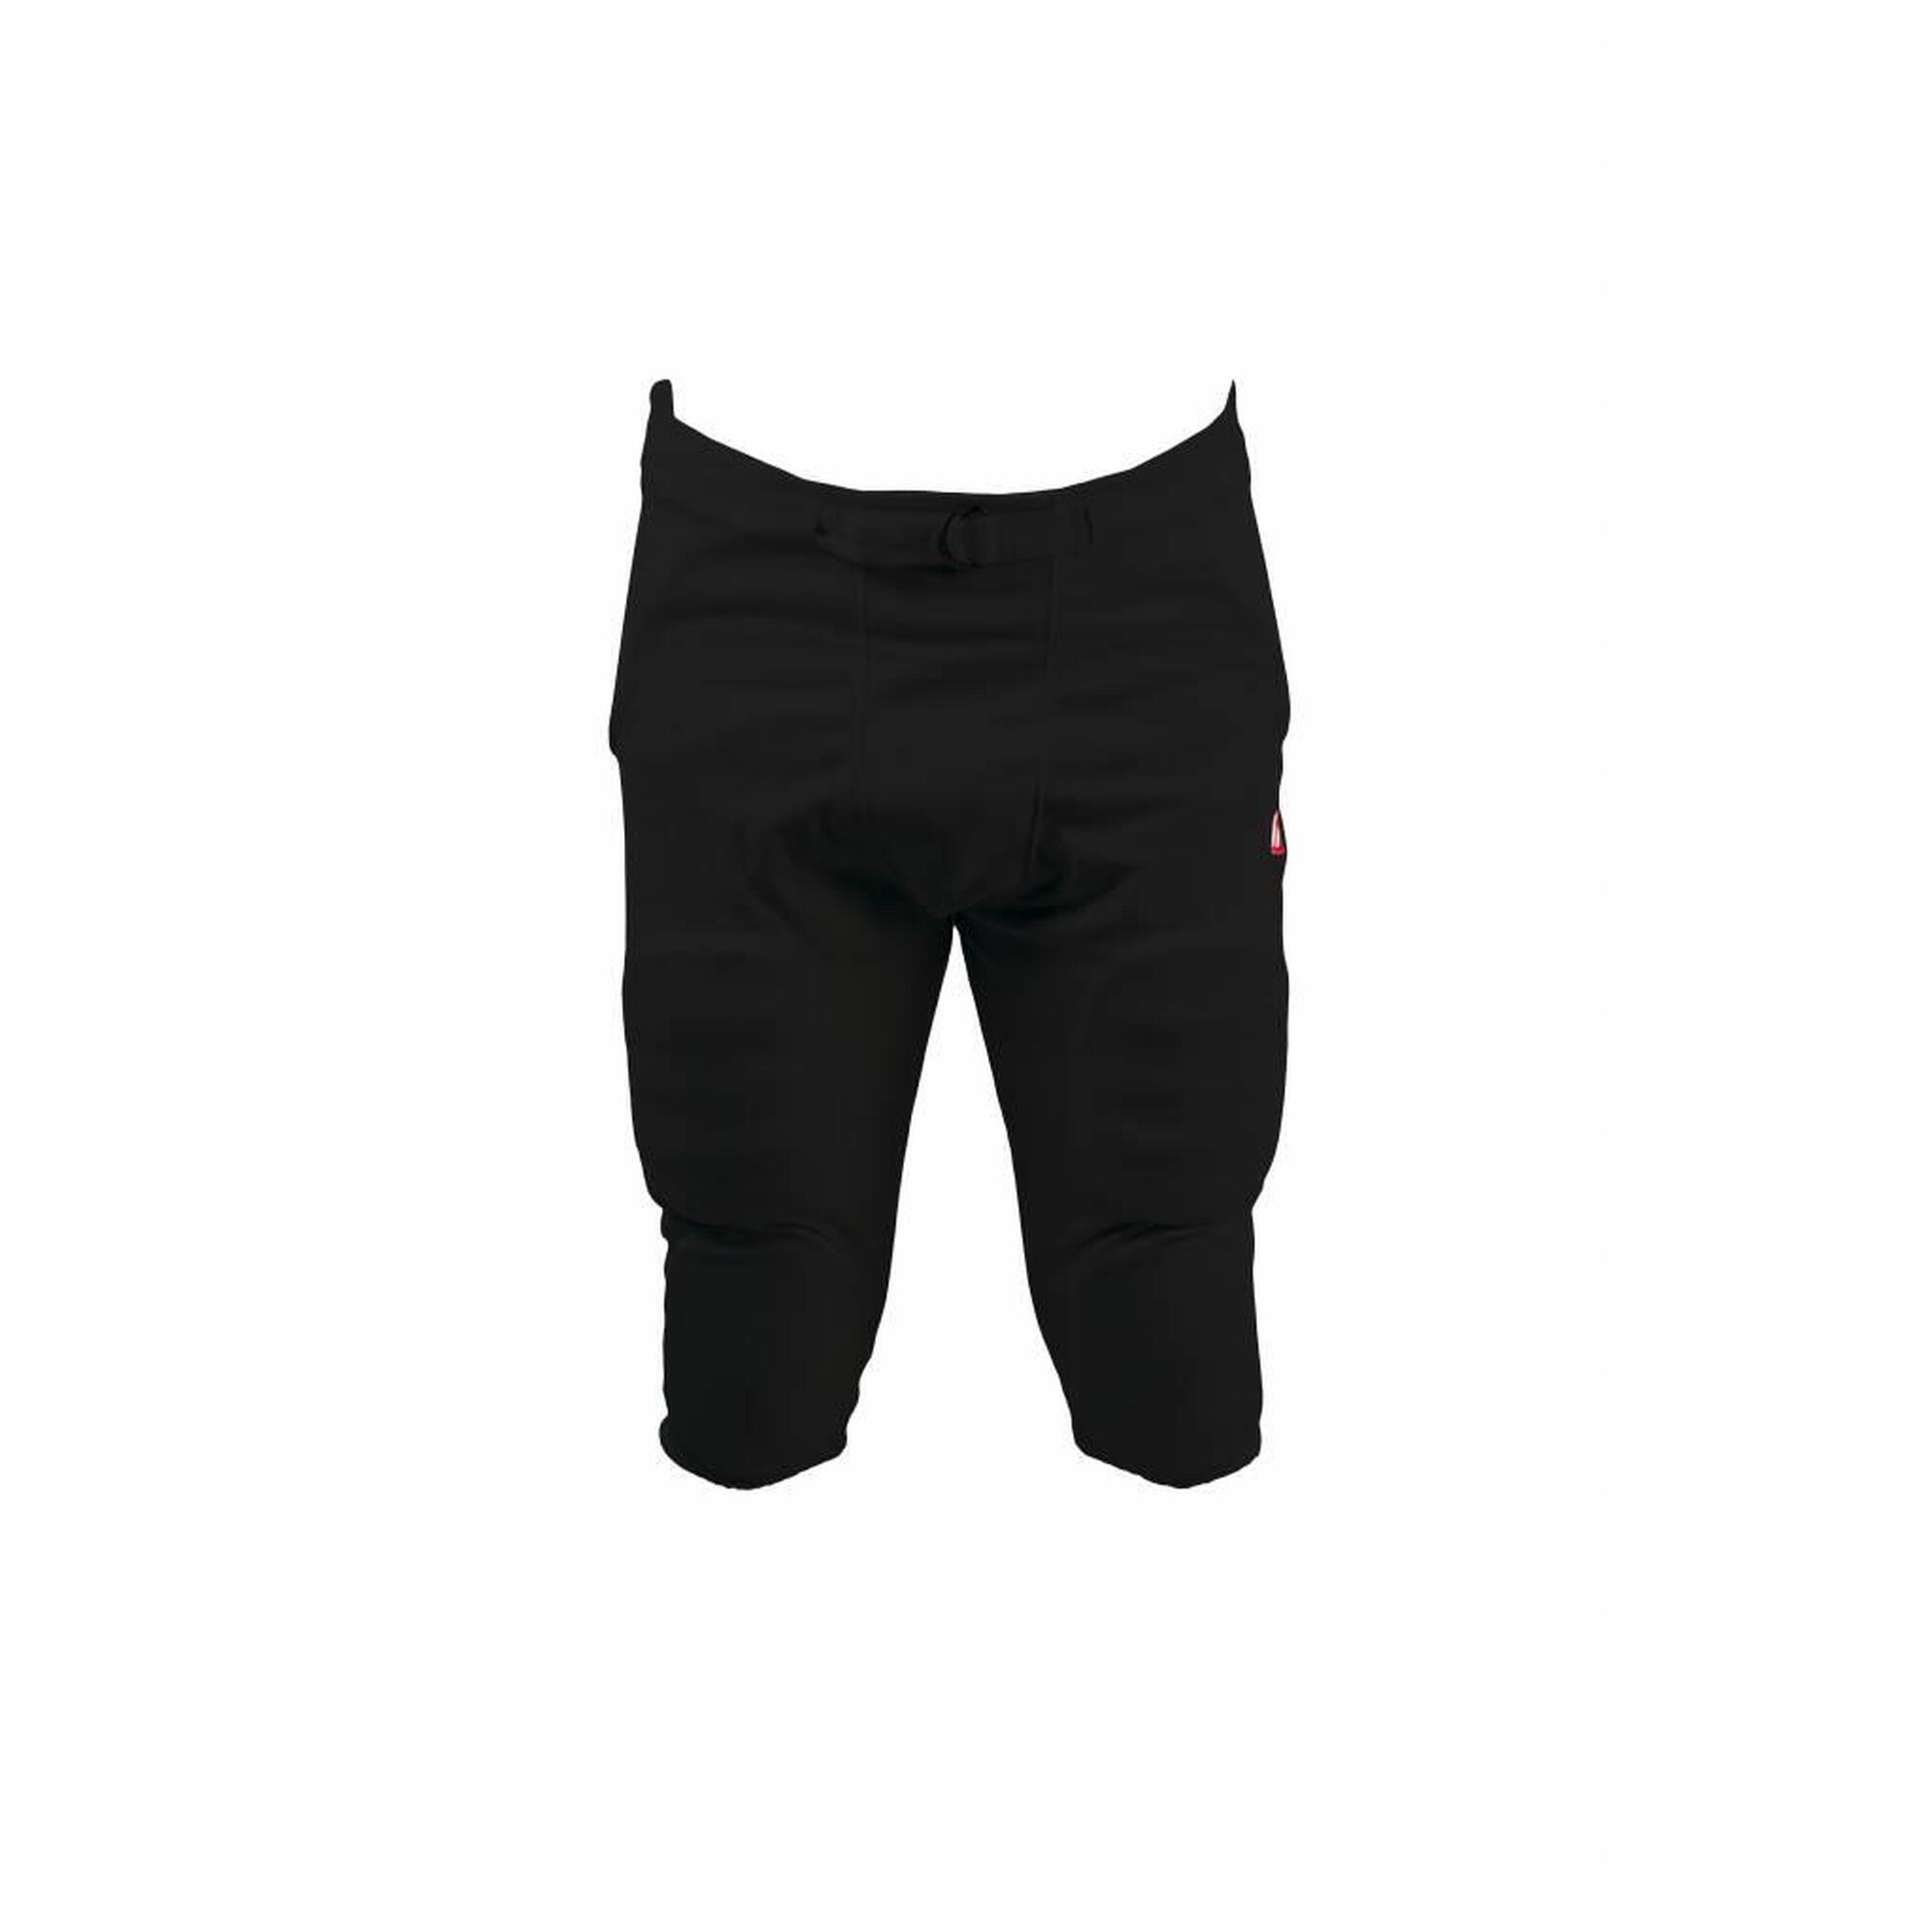 FPS-01 Noir pantalon avec protections intégrées, 7 pads